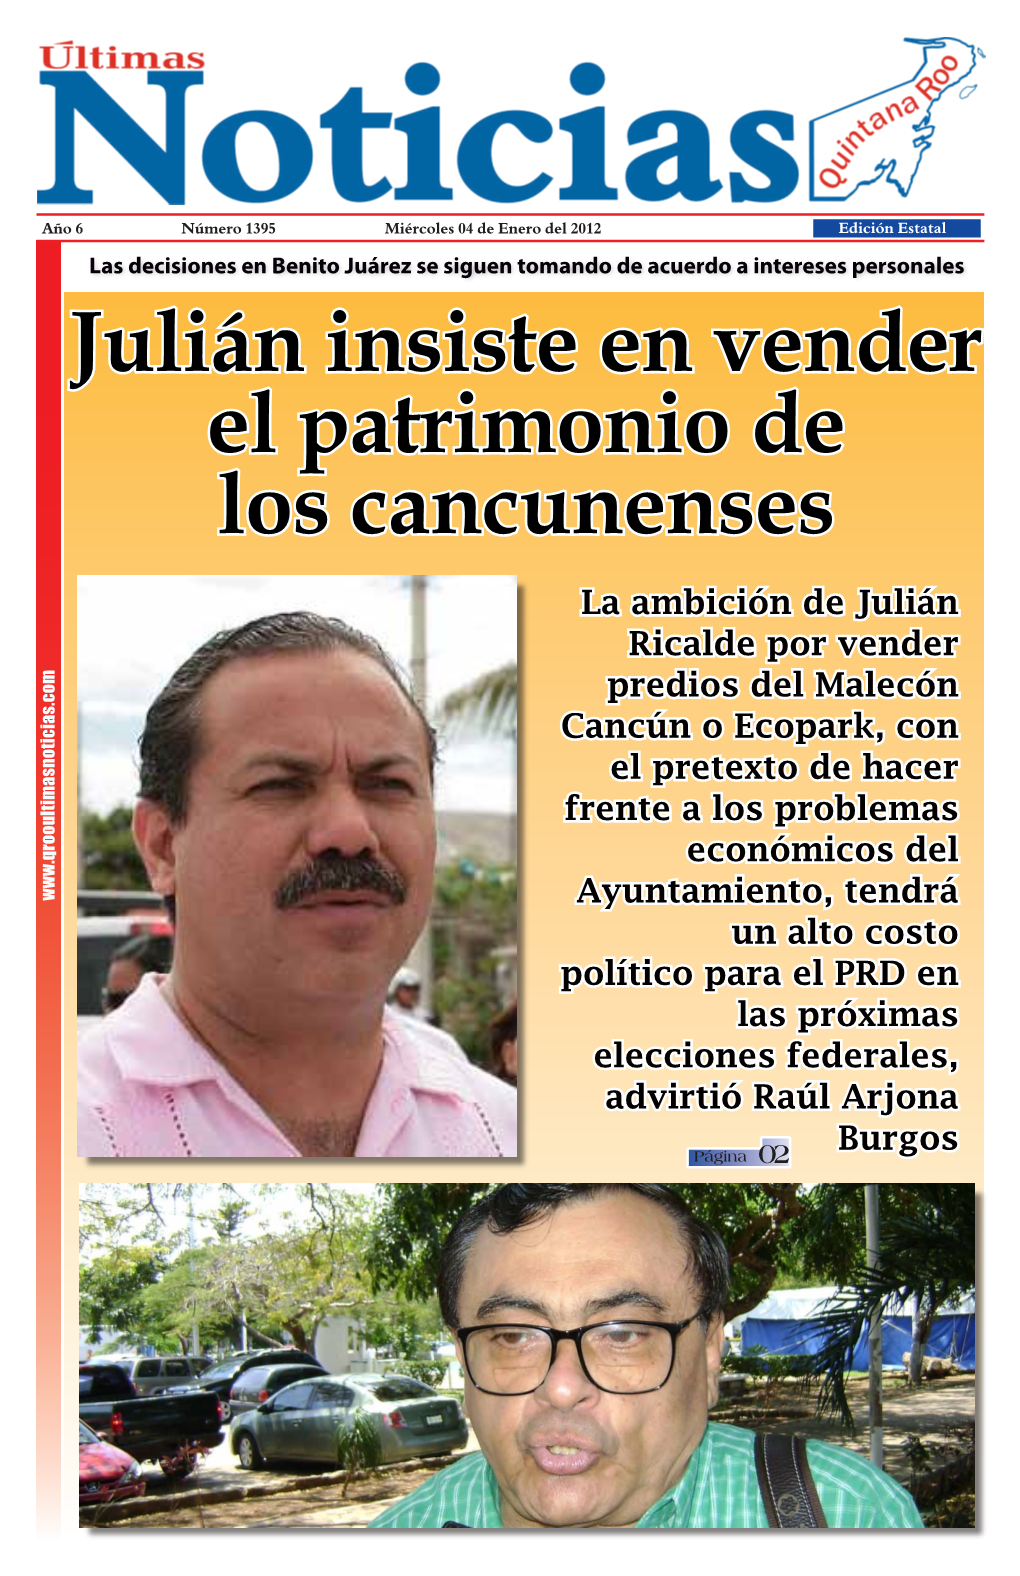 Julián Insiste En Vender El Patrimonio De Los Cancunenses